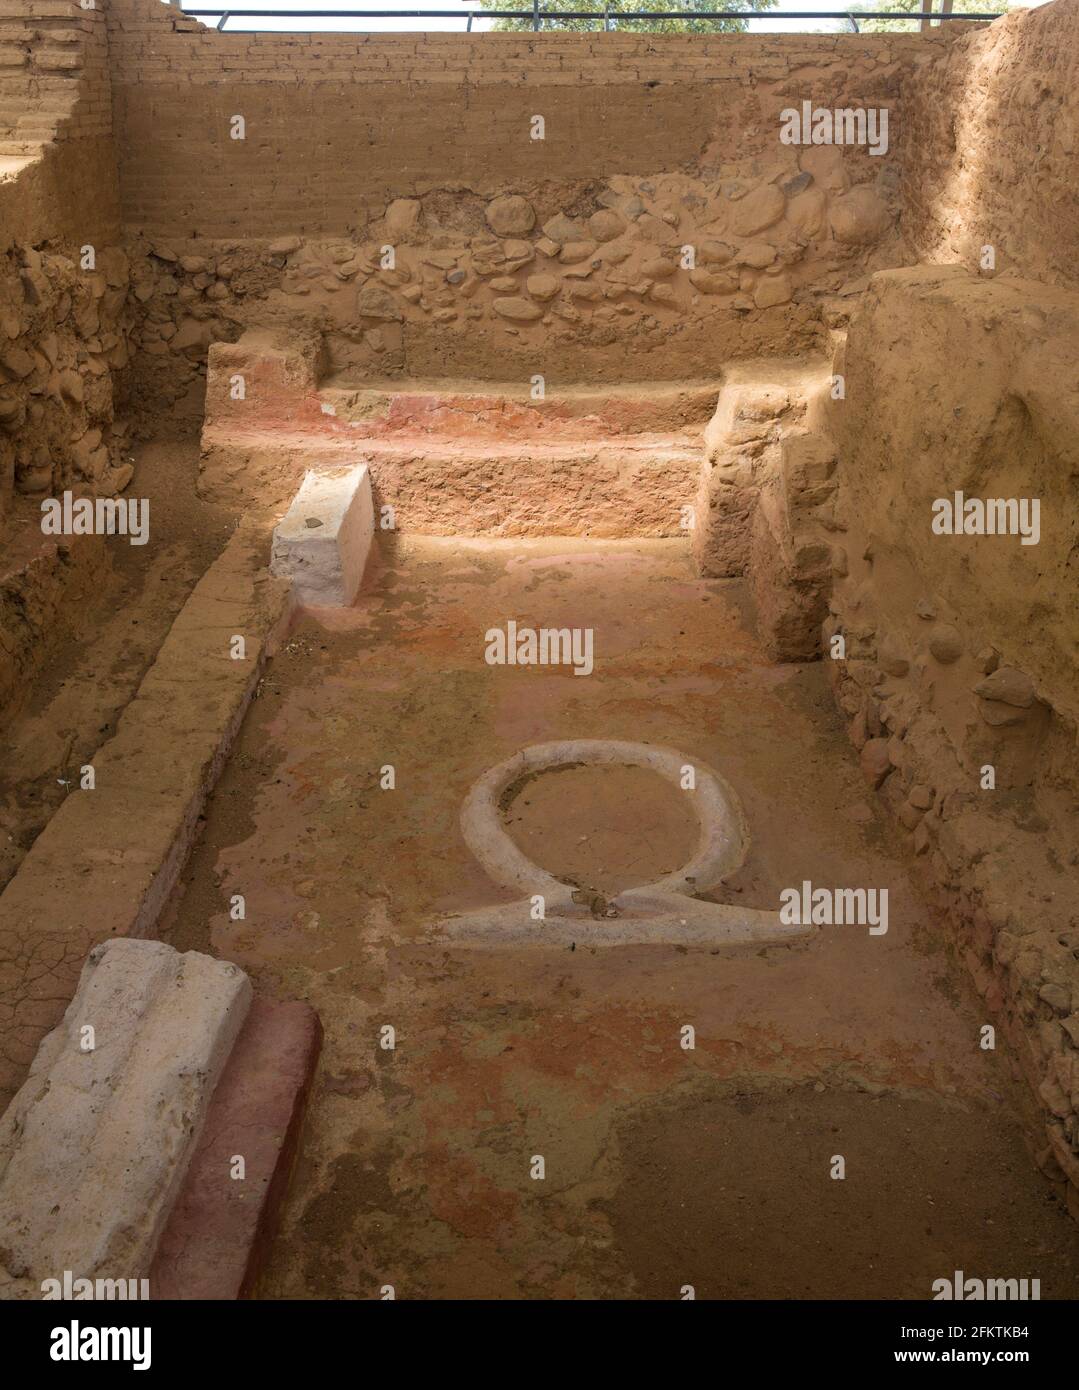 Altare di Cancho Roano nel sito archeologico, sito Tartessico meglio conservato. Zalamea de la Serena, Estremadura, Spagna. Foto Stock